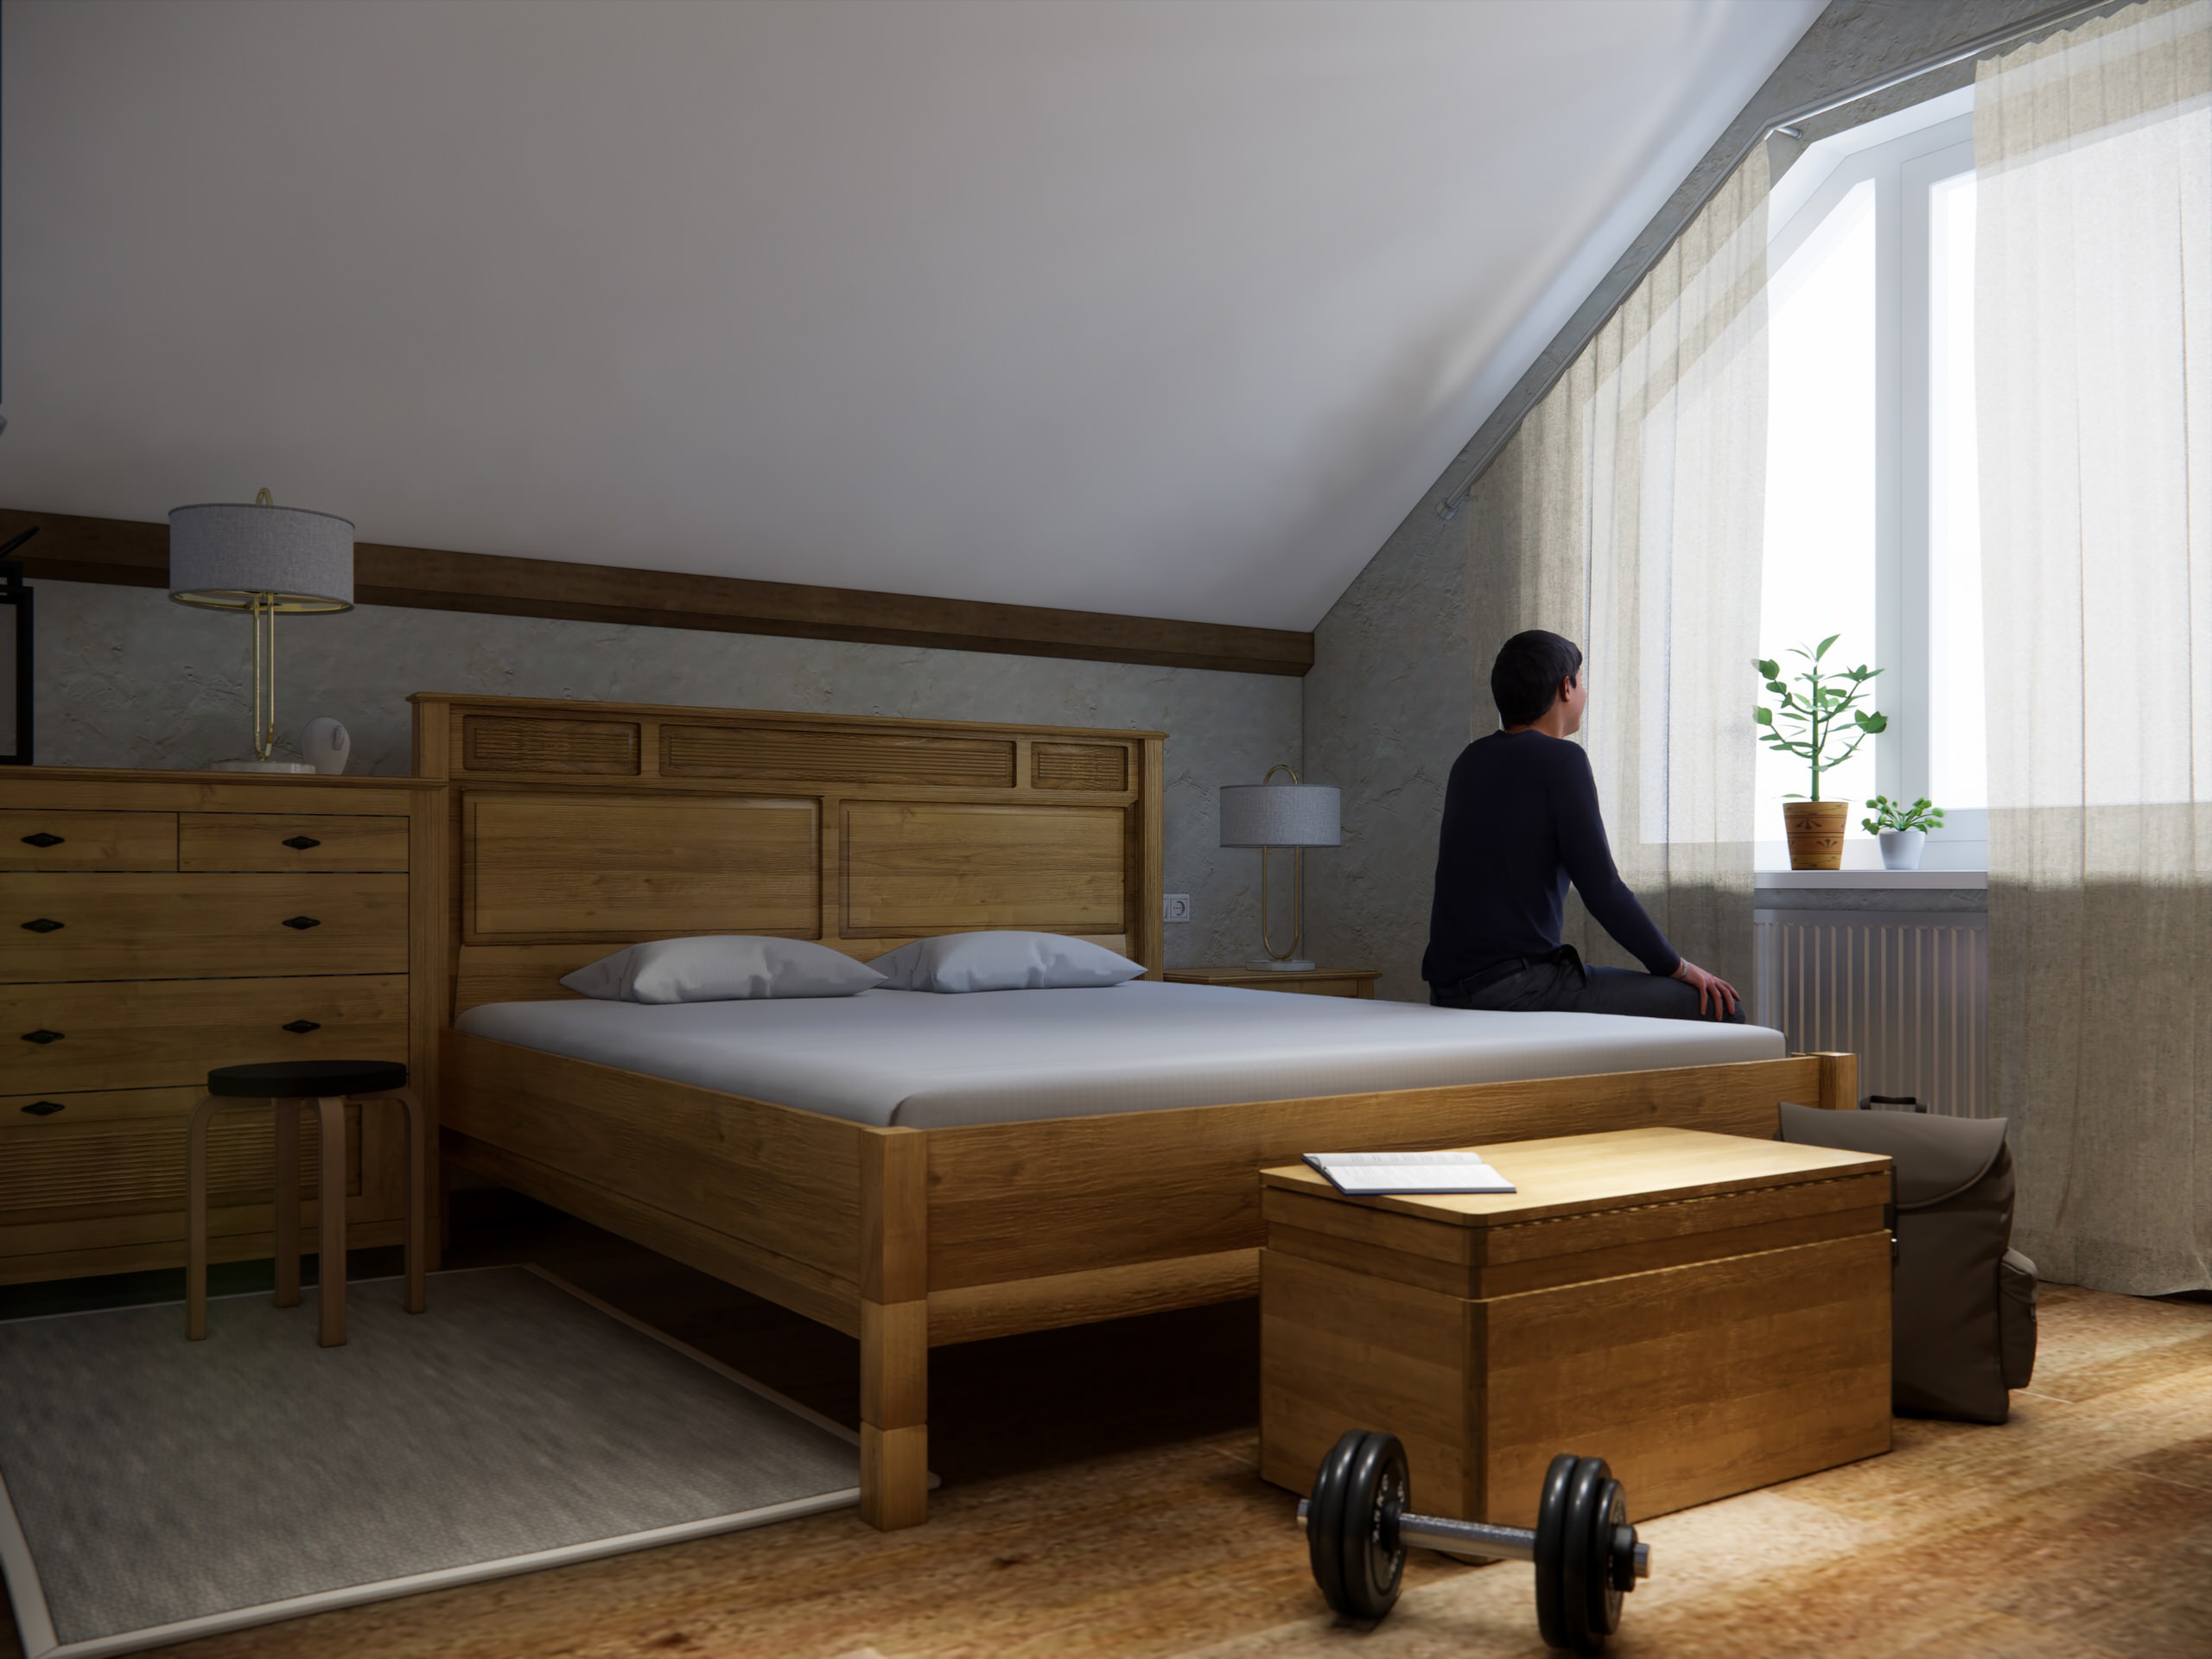 Интерьеры дома в немецком стиле: спальни и второй этаж обзорно